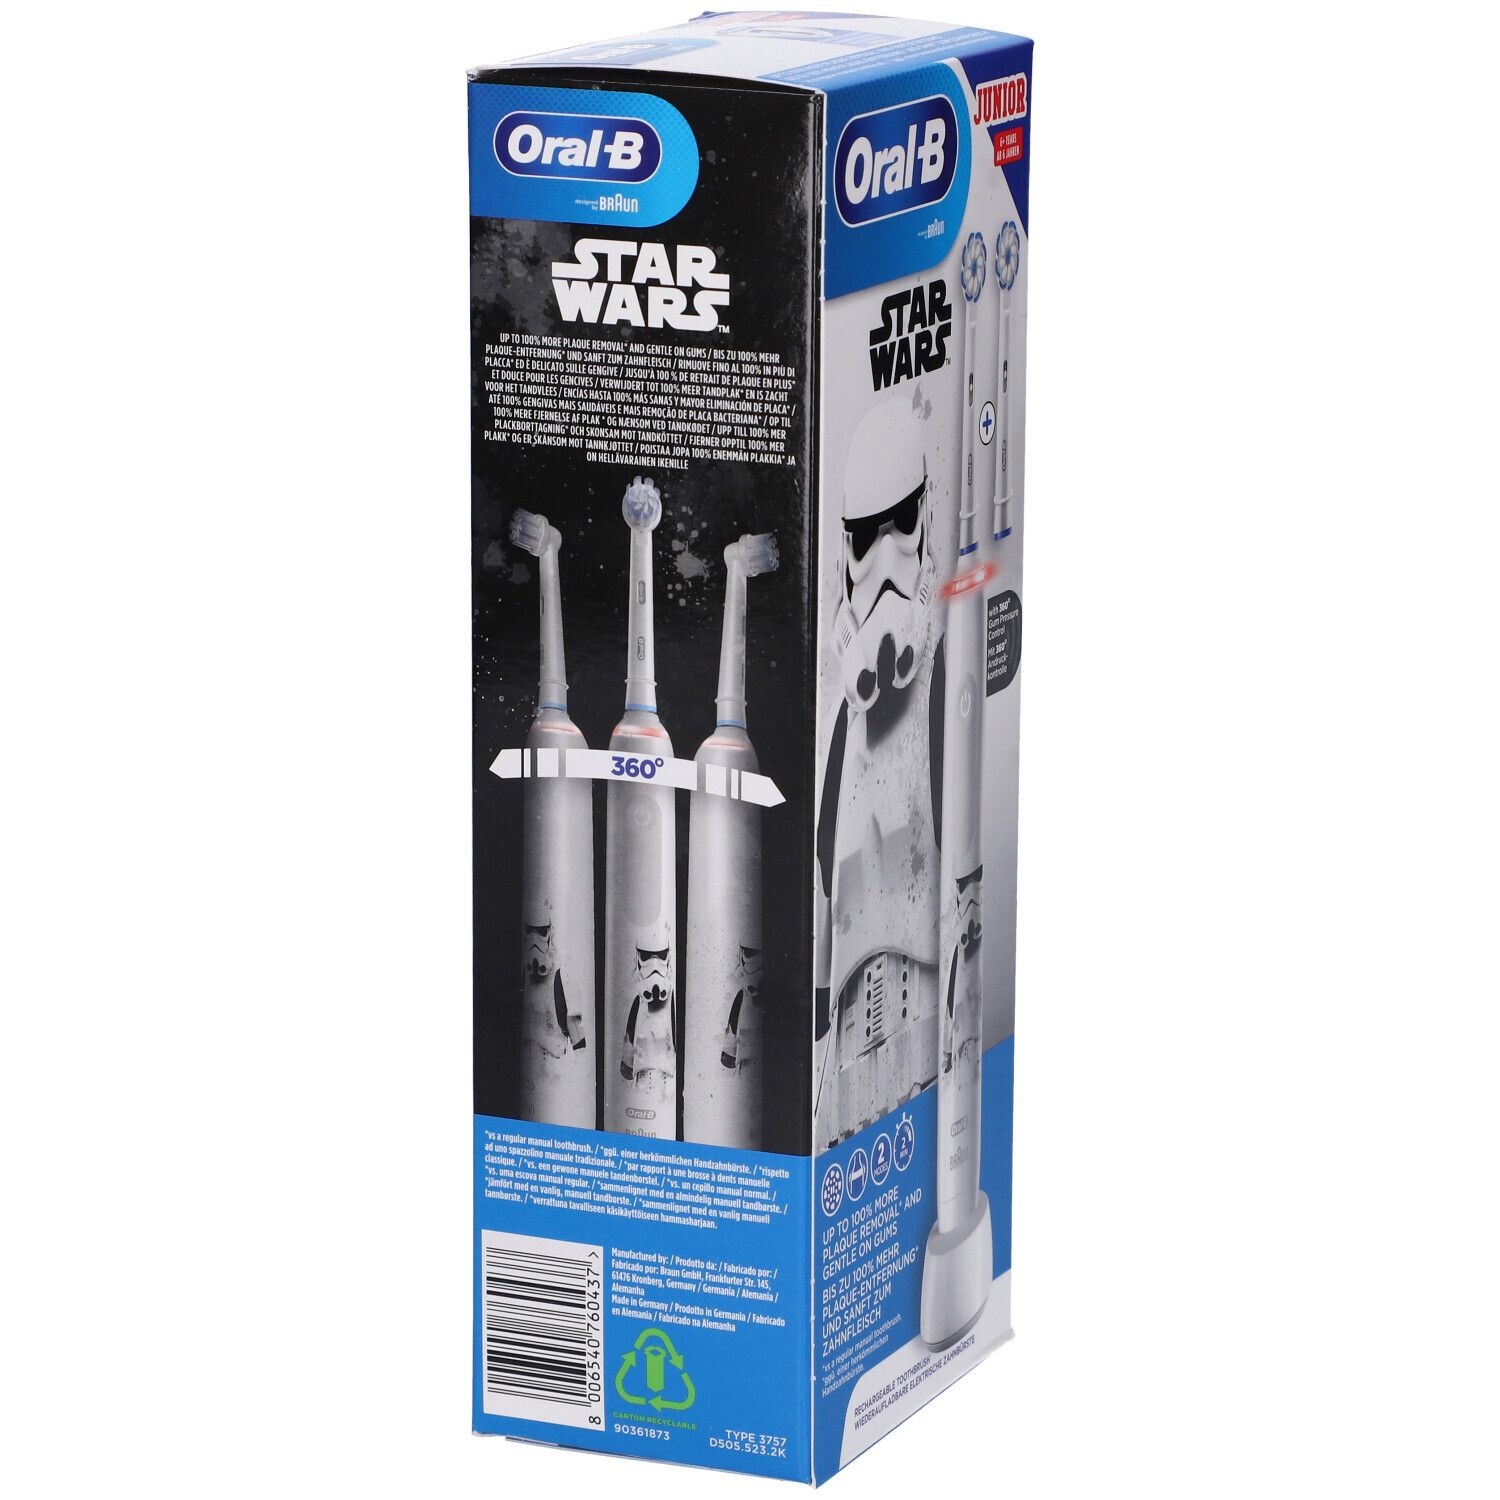 Oral-B - Elektrische Zahnbürste "Junior" Star Wars